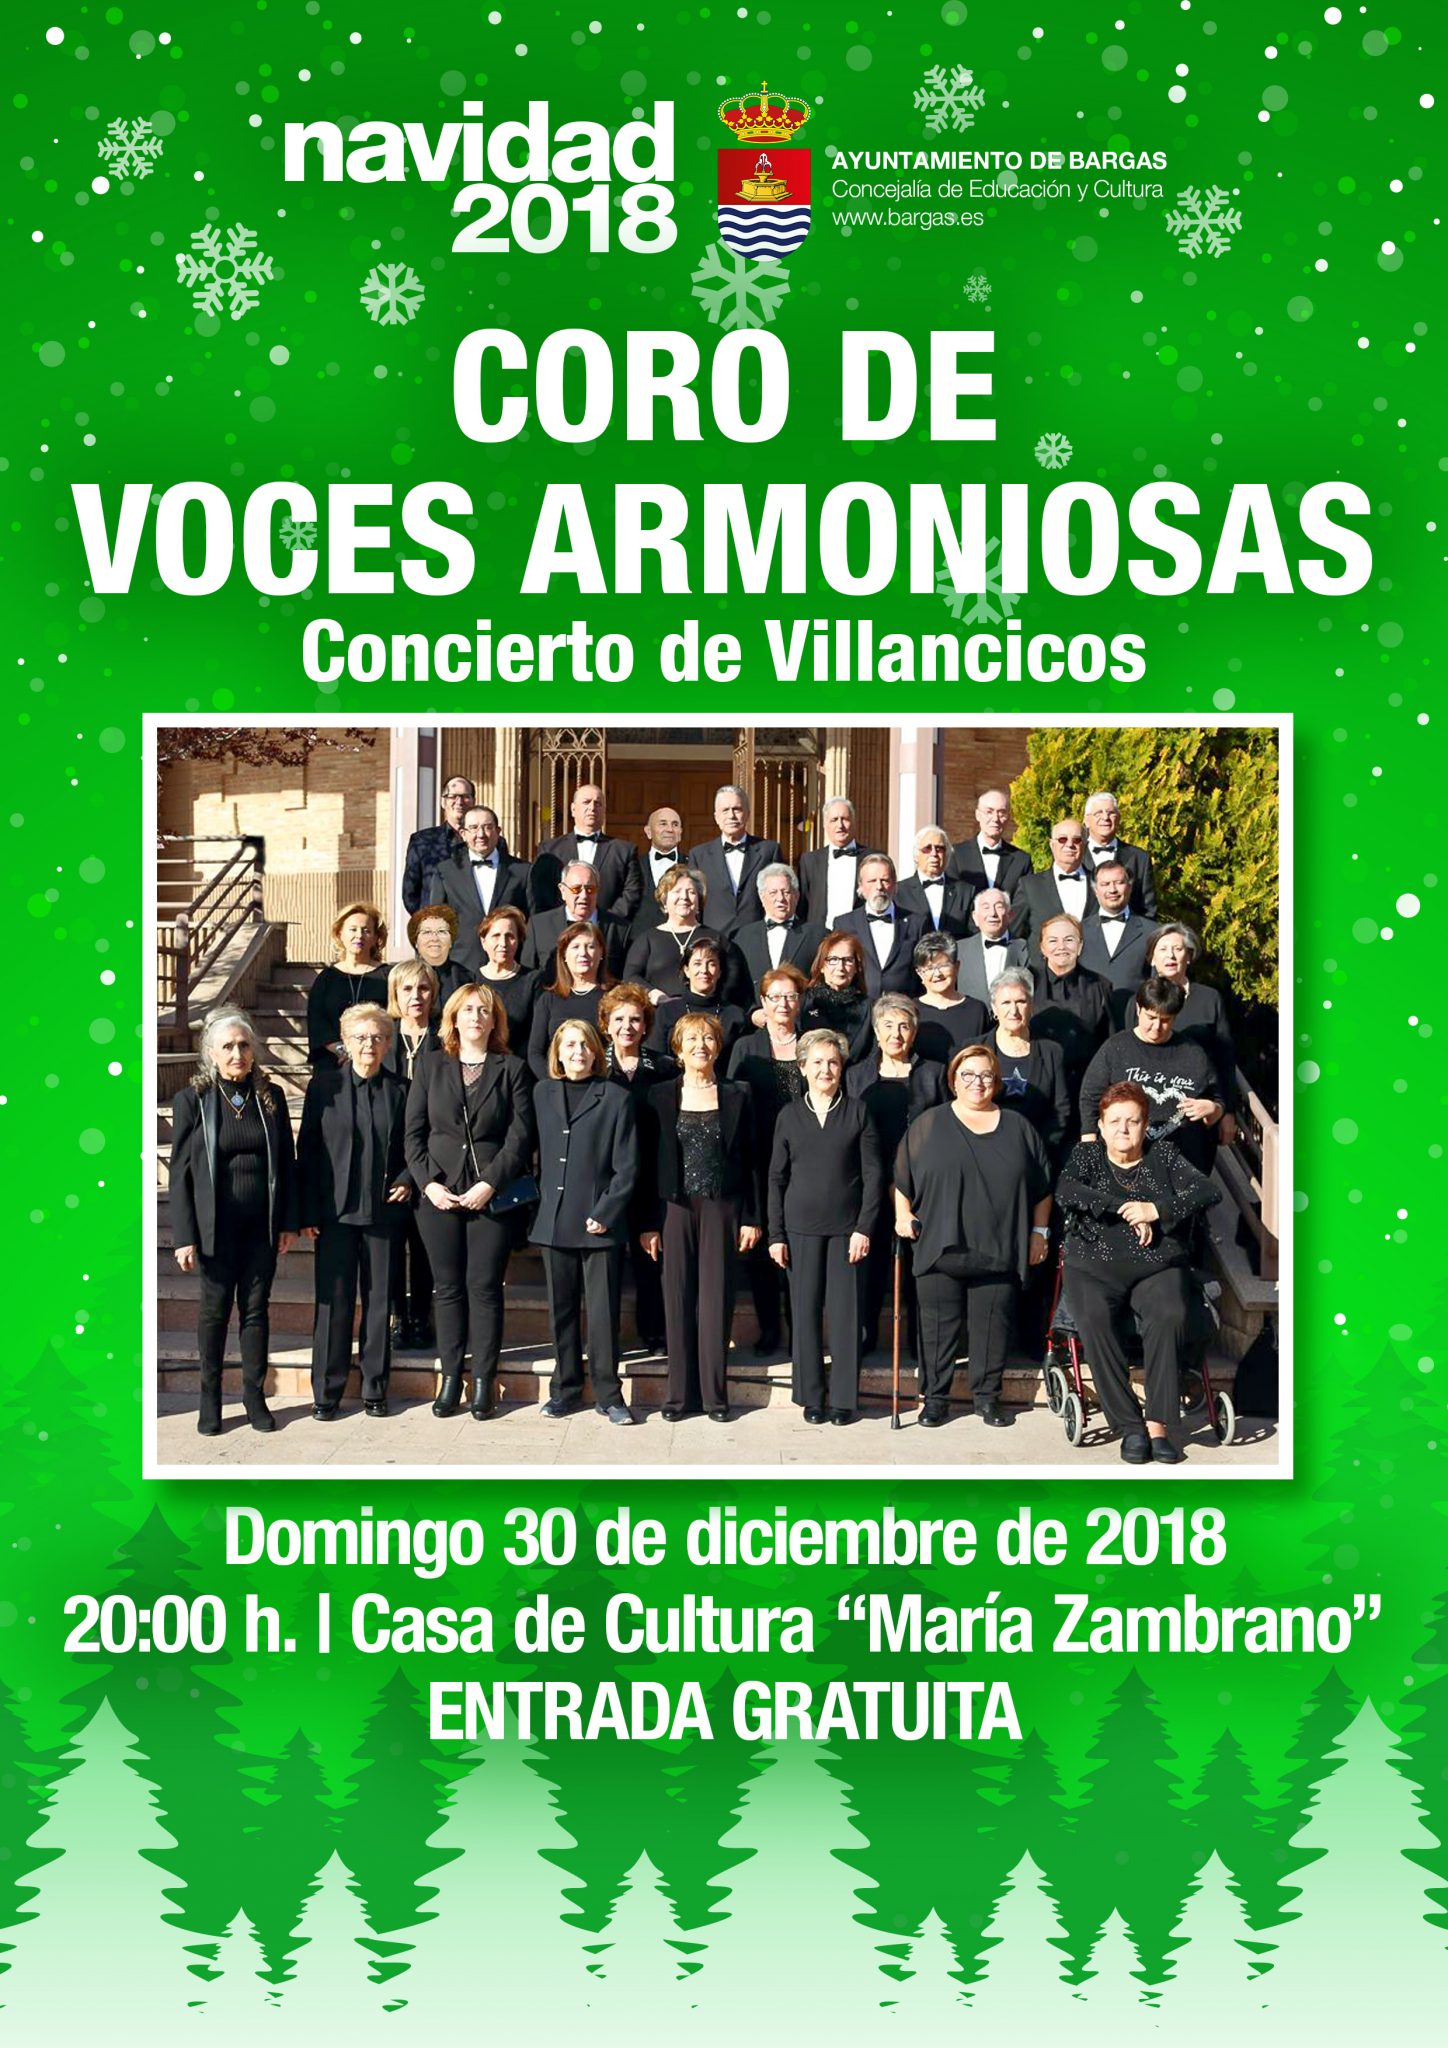 Concierto de Villancicos a cargo del Coro de Voces Armoniosas